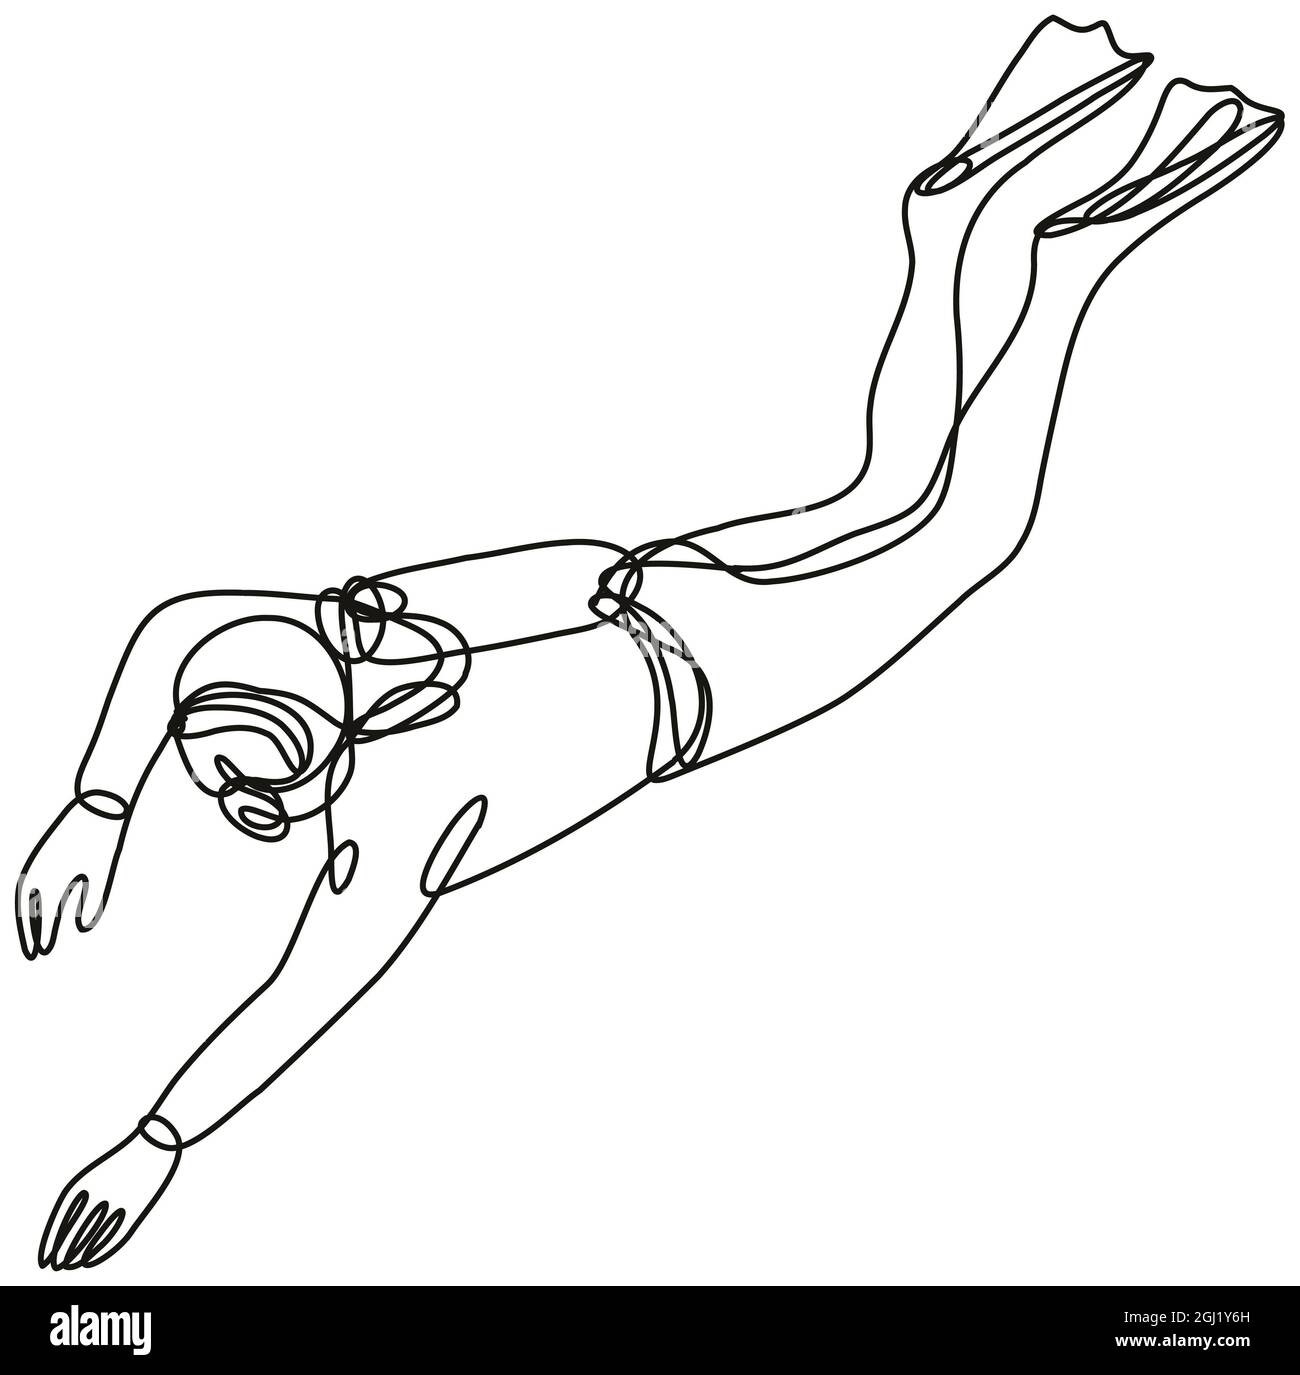 Illustrazione di un subacqueo in linea continua che si tuffa in linea singola o in stile doodle in bianco e nero su sfondo isolato. Foto Stock